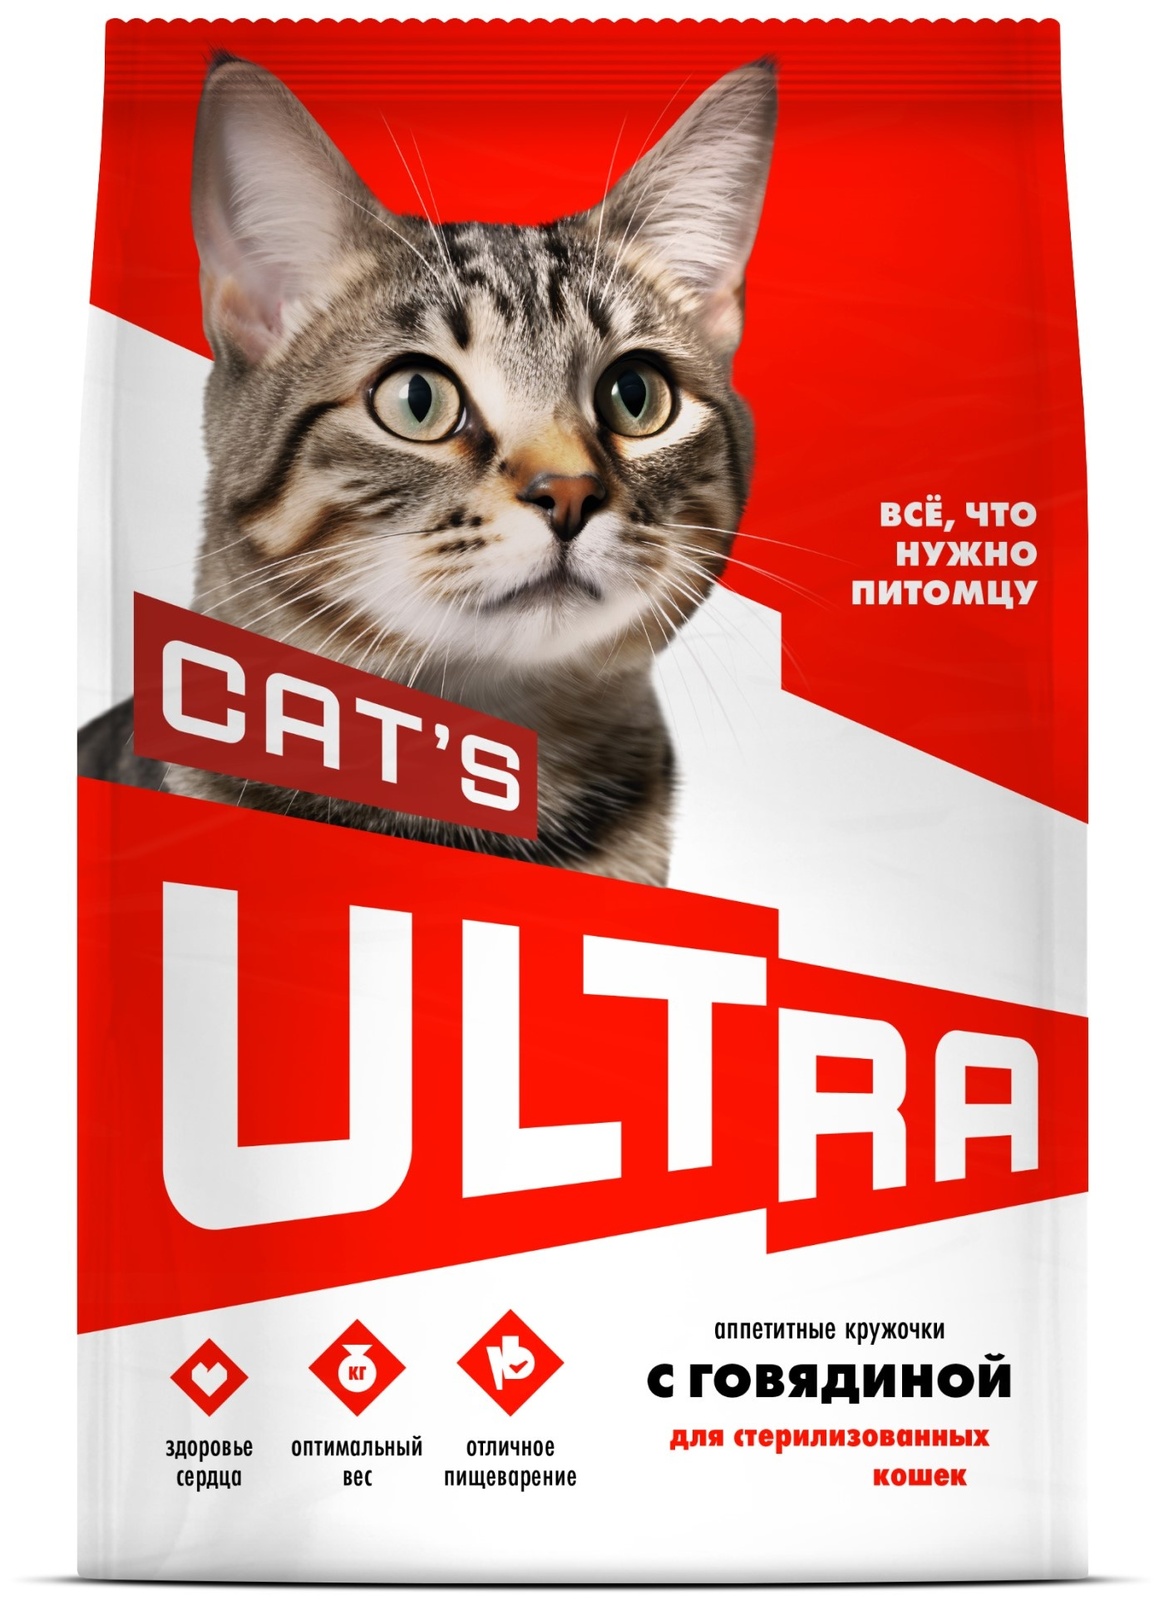 ULTRA ULTRA аппетитные кружочки с говядиной для стерилизованных кошек (600 г) ultra ultra аппетитные кружочки с рыбой для стерилизованных кошек 600 г